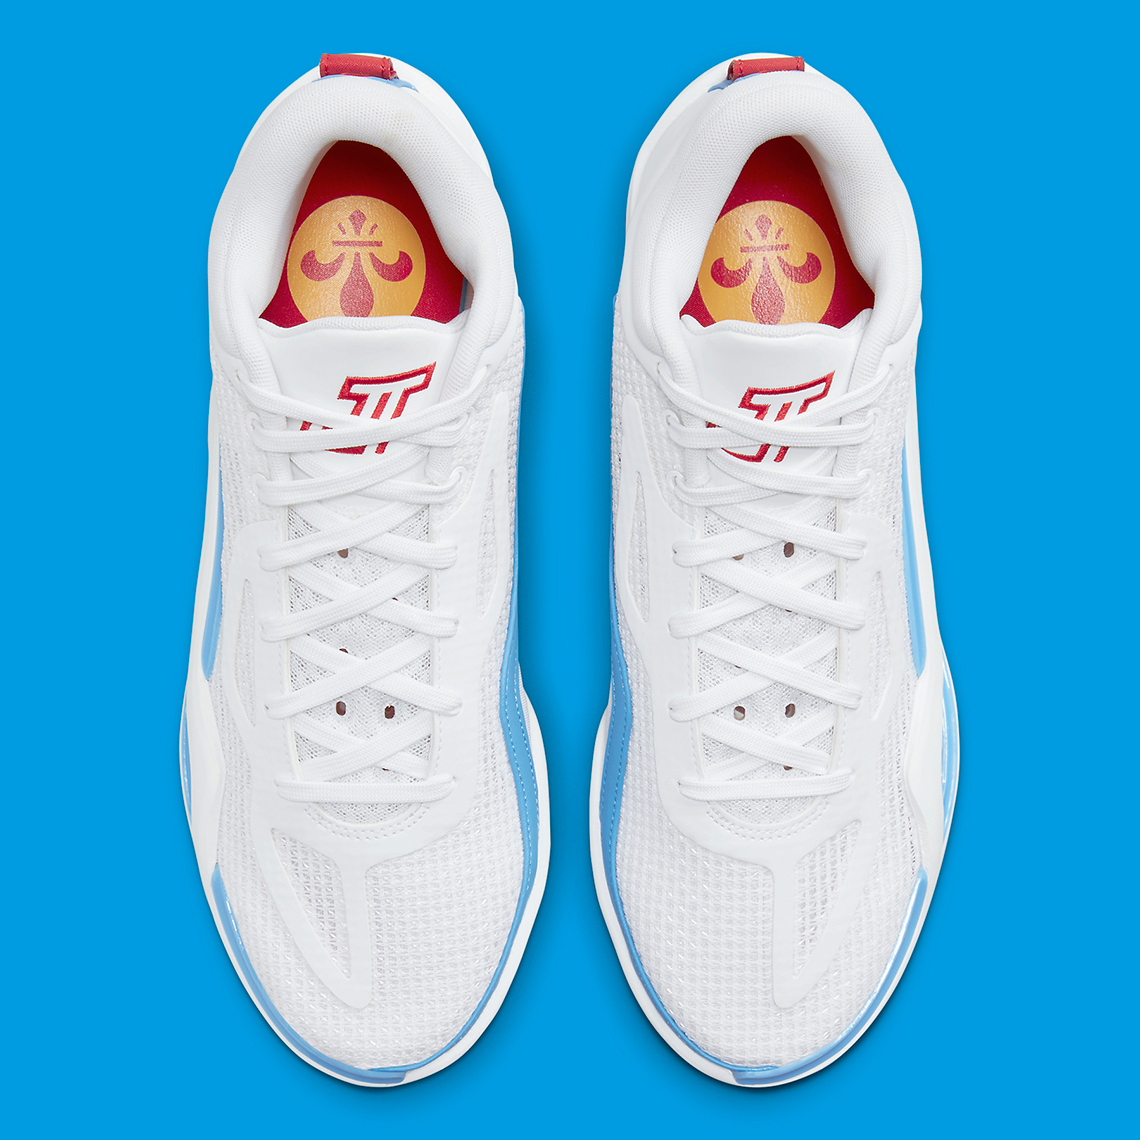 Nike Air Max 97 “Jayson Tatum” (CJ9891-600) St Louis Roots Men 6Y/W7.5 314  New